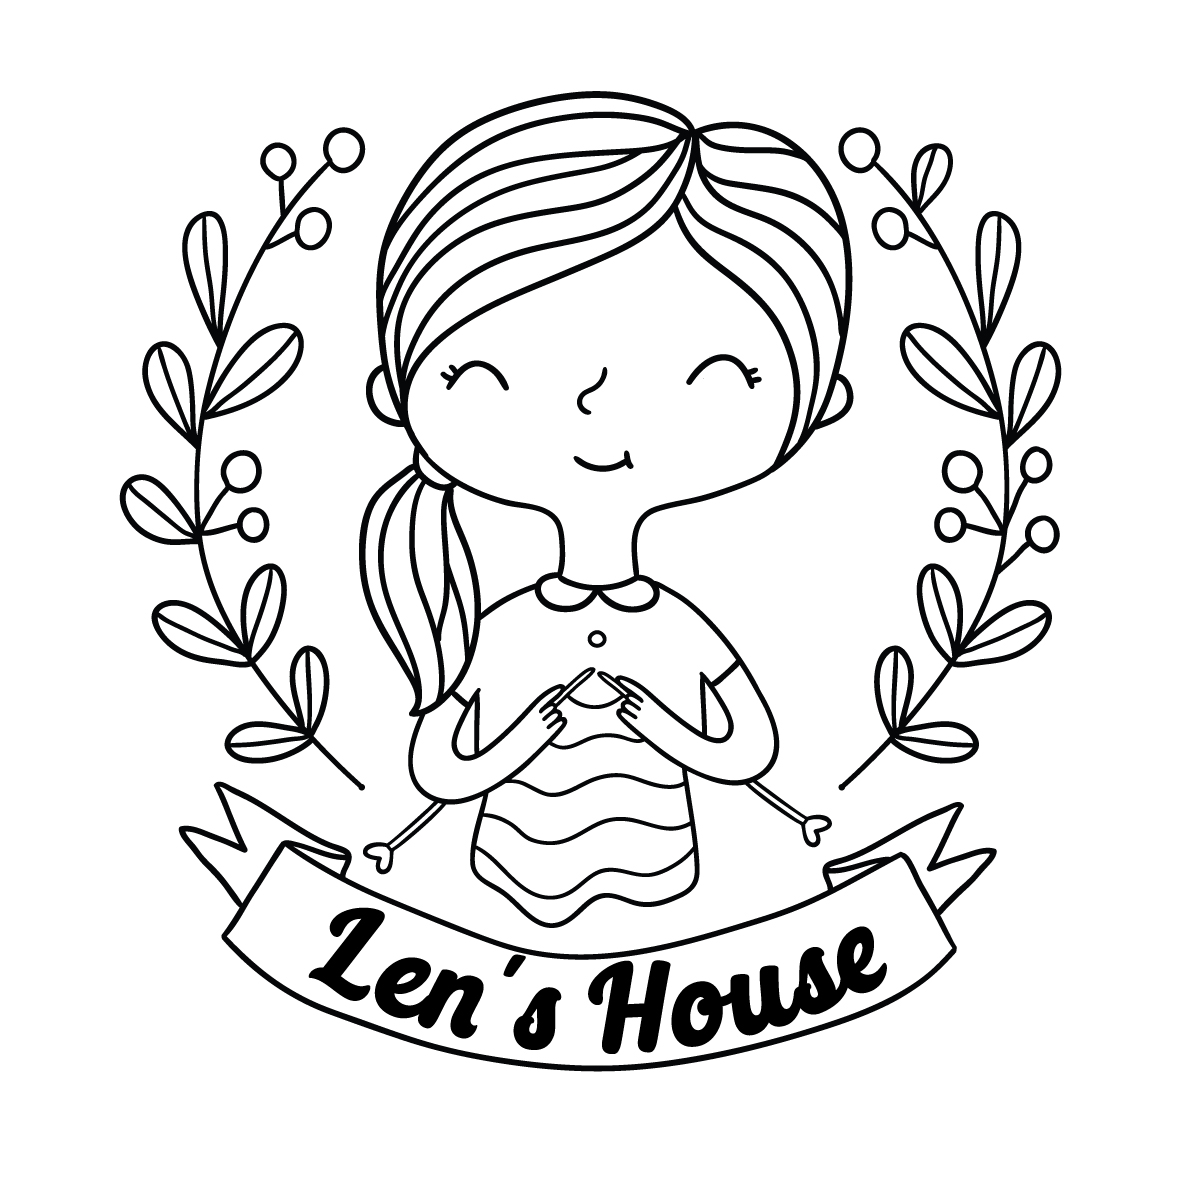 len house-01 - copy